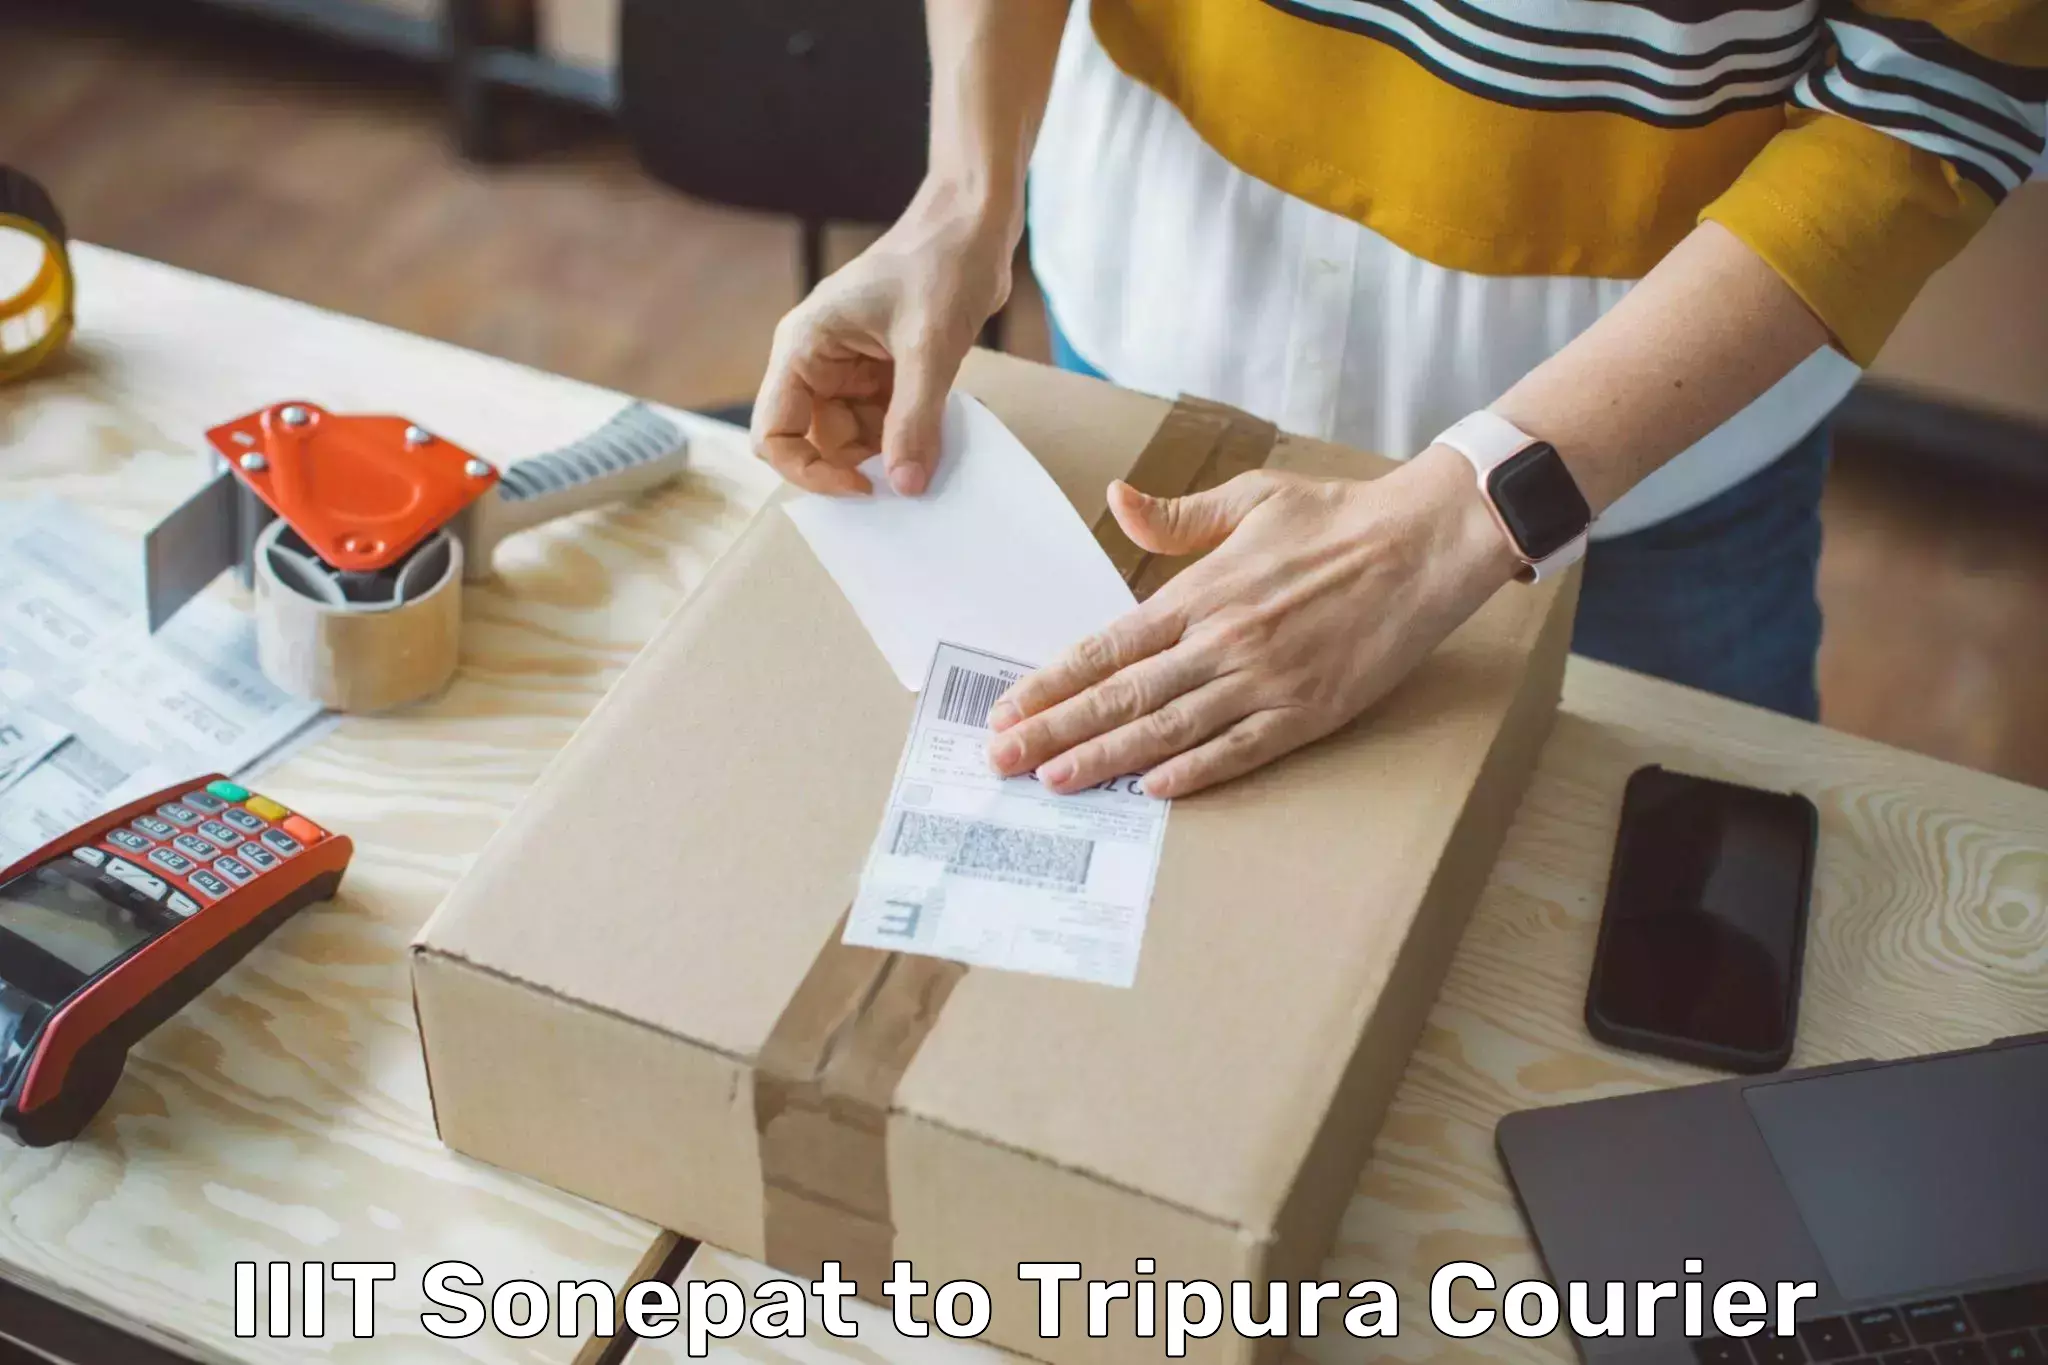 Bulk order courier IIIT Sonepat to Manughat